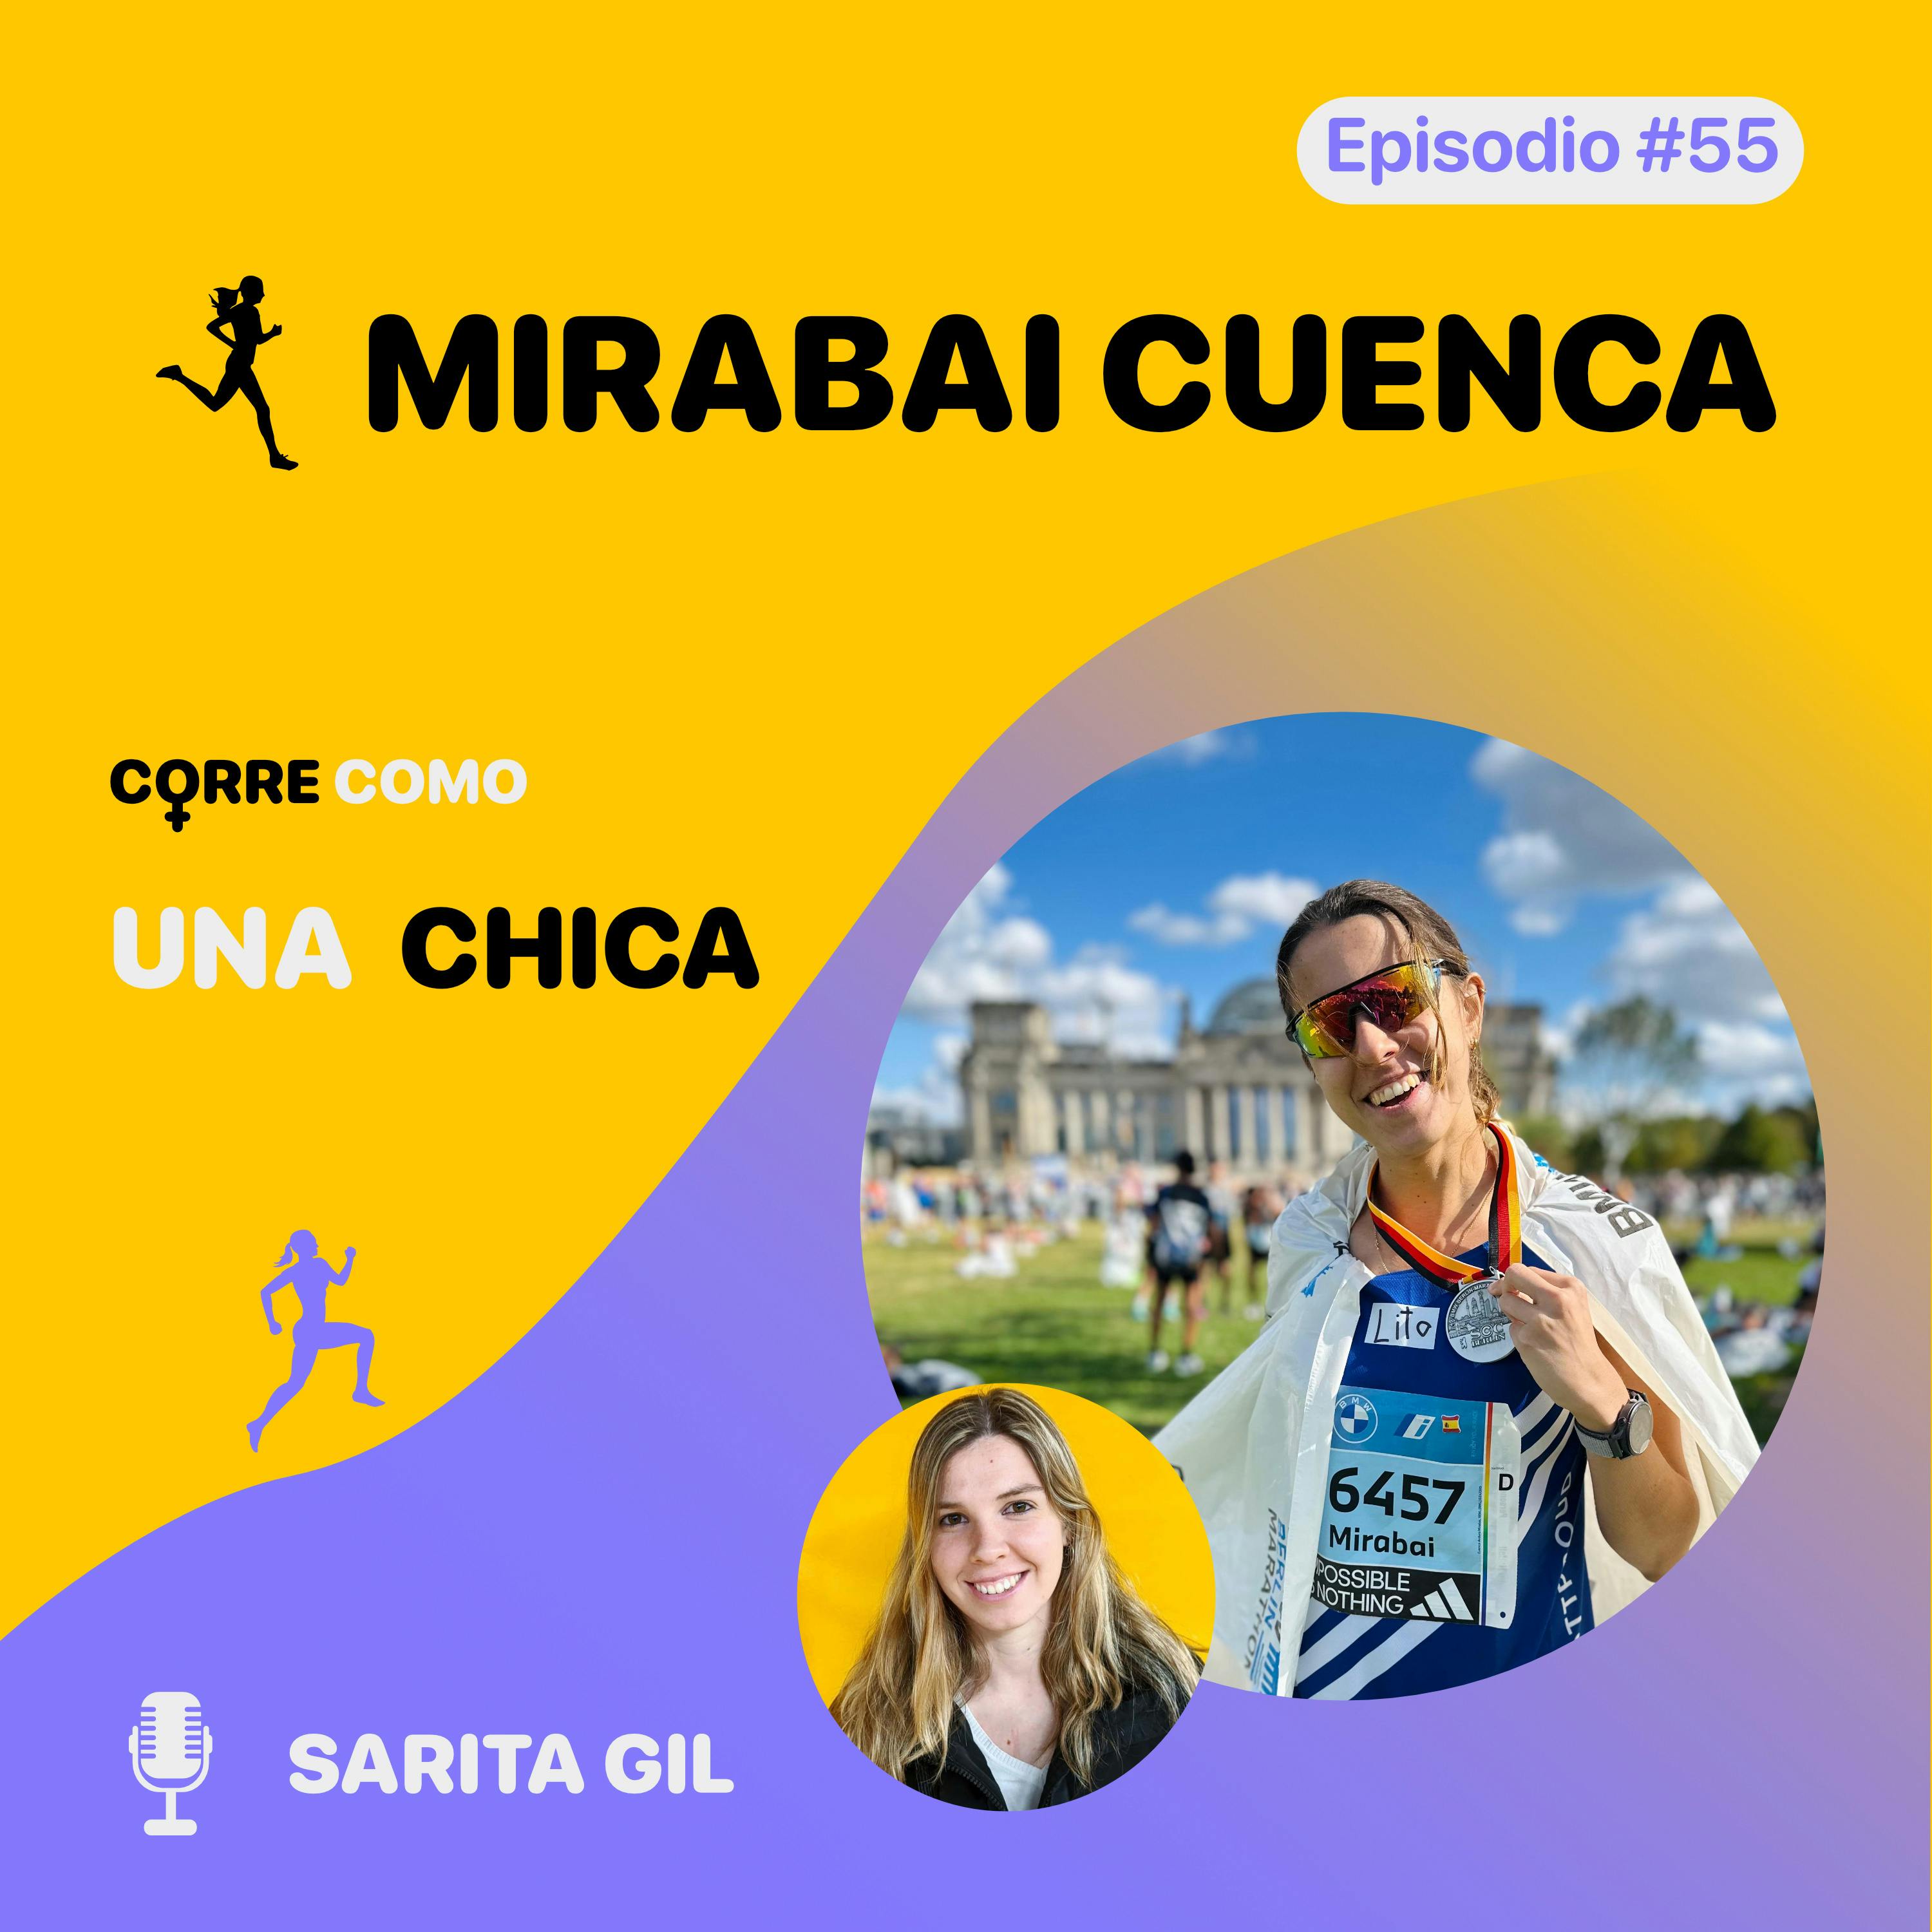 imagen de portada de: Episodio #55 - Mirabai Cuenca: “Deportes” 